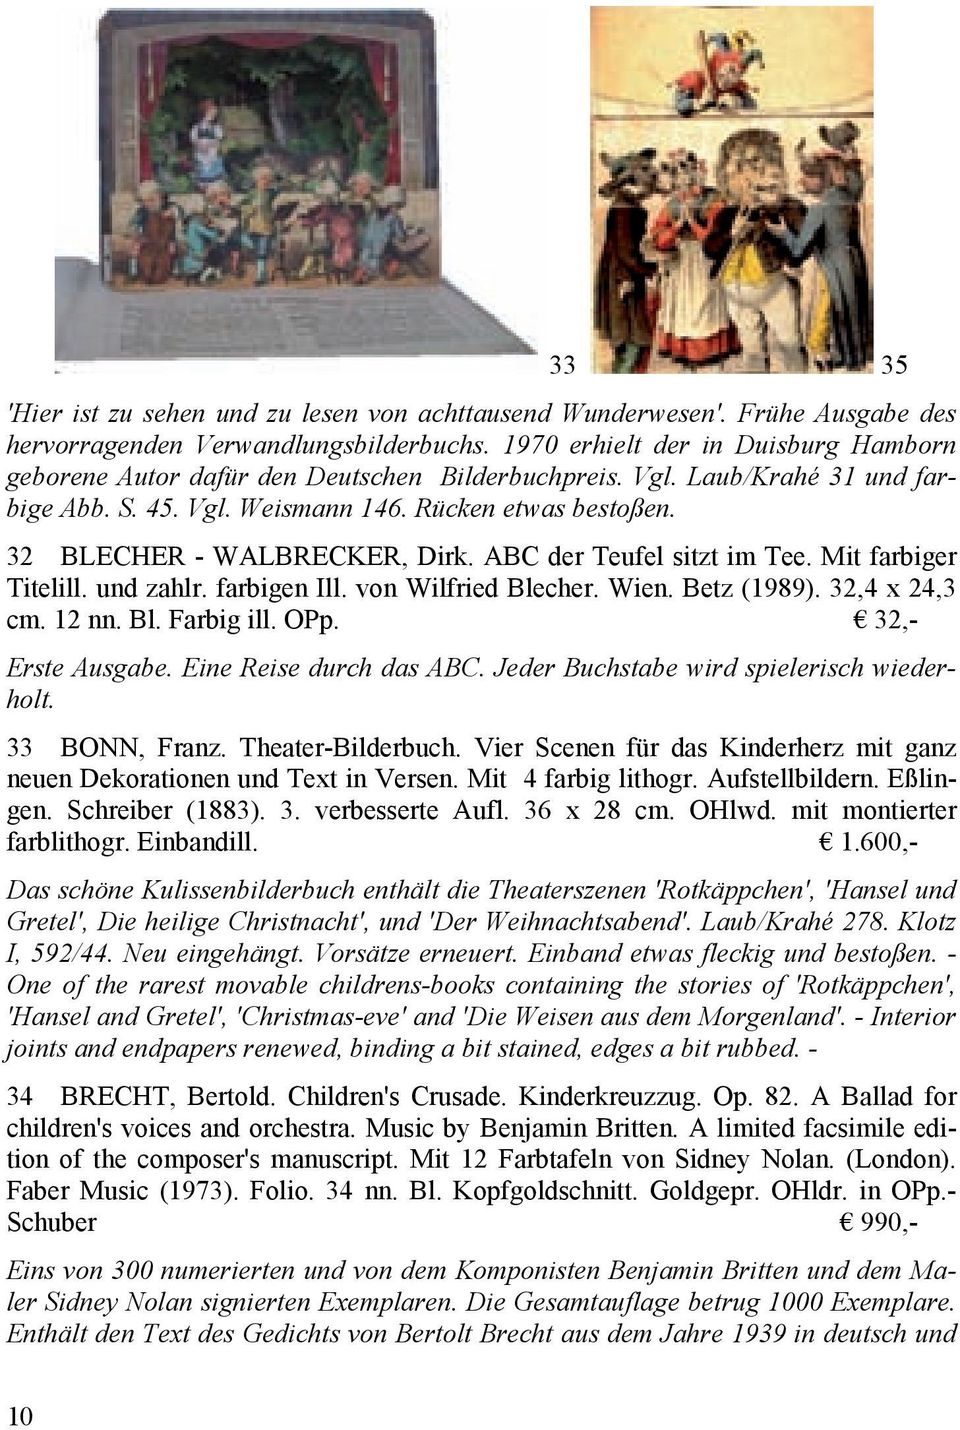 32 BLECHER - WALBRECKER, Dirk. ABC der Teufel sitzt im Tee. Mit farbiger Titelill. und zahlr. farbigen Ill. von Wilfried Blecher. Wien. Betz (1989). 32,4 x 24,3 cm. 12 nn. Bl. Farbig ill. OPp.